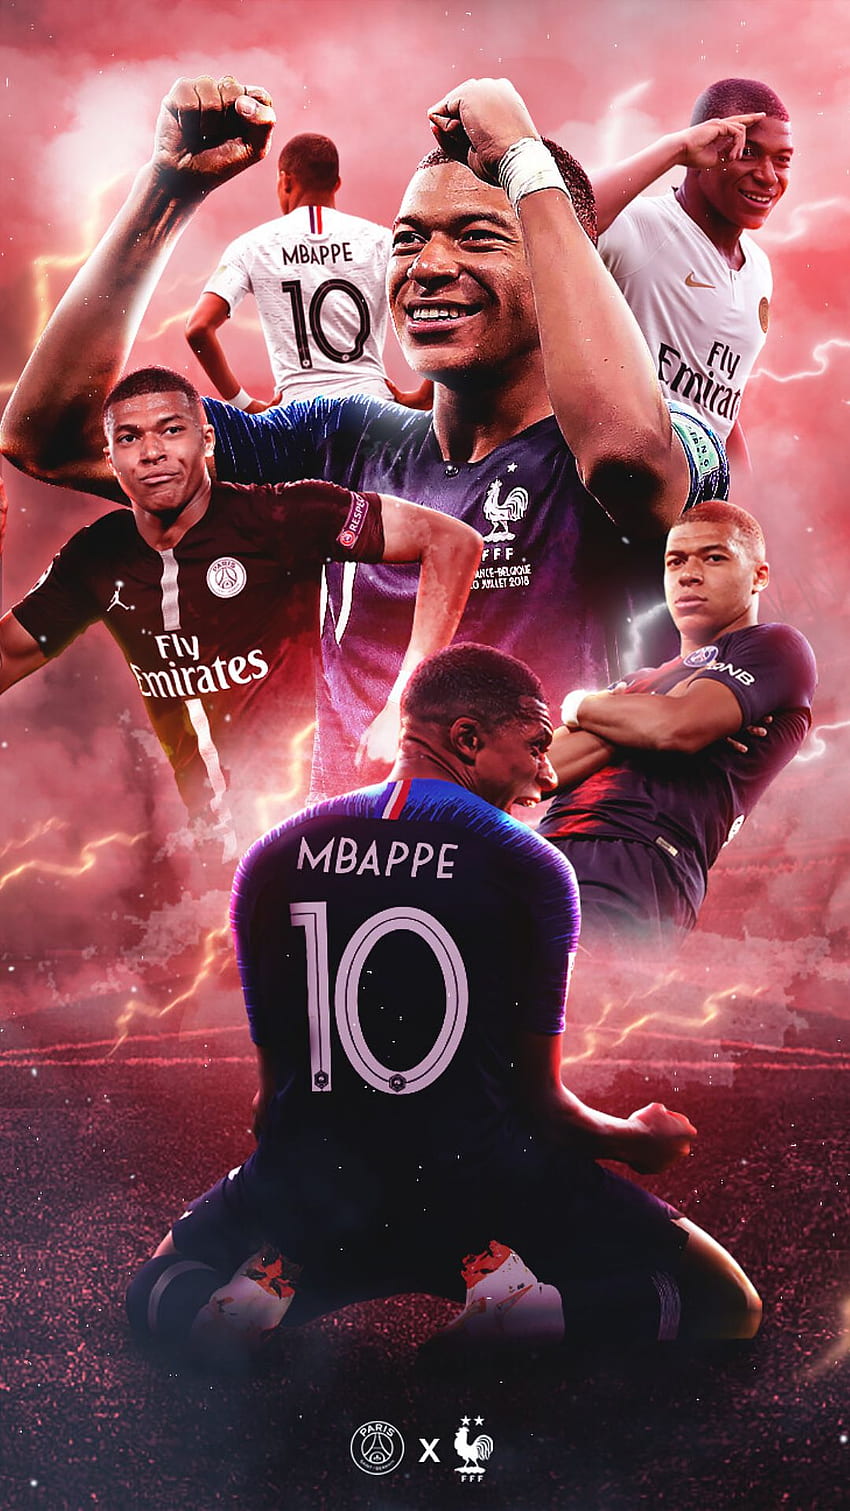 Hình nền Kylian Mbappé 2022 sẽ là món quà tuyệt vời dành cho các fan hâm mộ bóng đá. Với những hình ảnh nghệ thuật, chân thực và sáng tạo, bạn sẽ được chiêm ngưỡng những khoảnh khắc tuyệt đẹp của siêu sao bóng đá này, tạo nên một không gian đẹp đẽ và tinh tế.